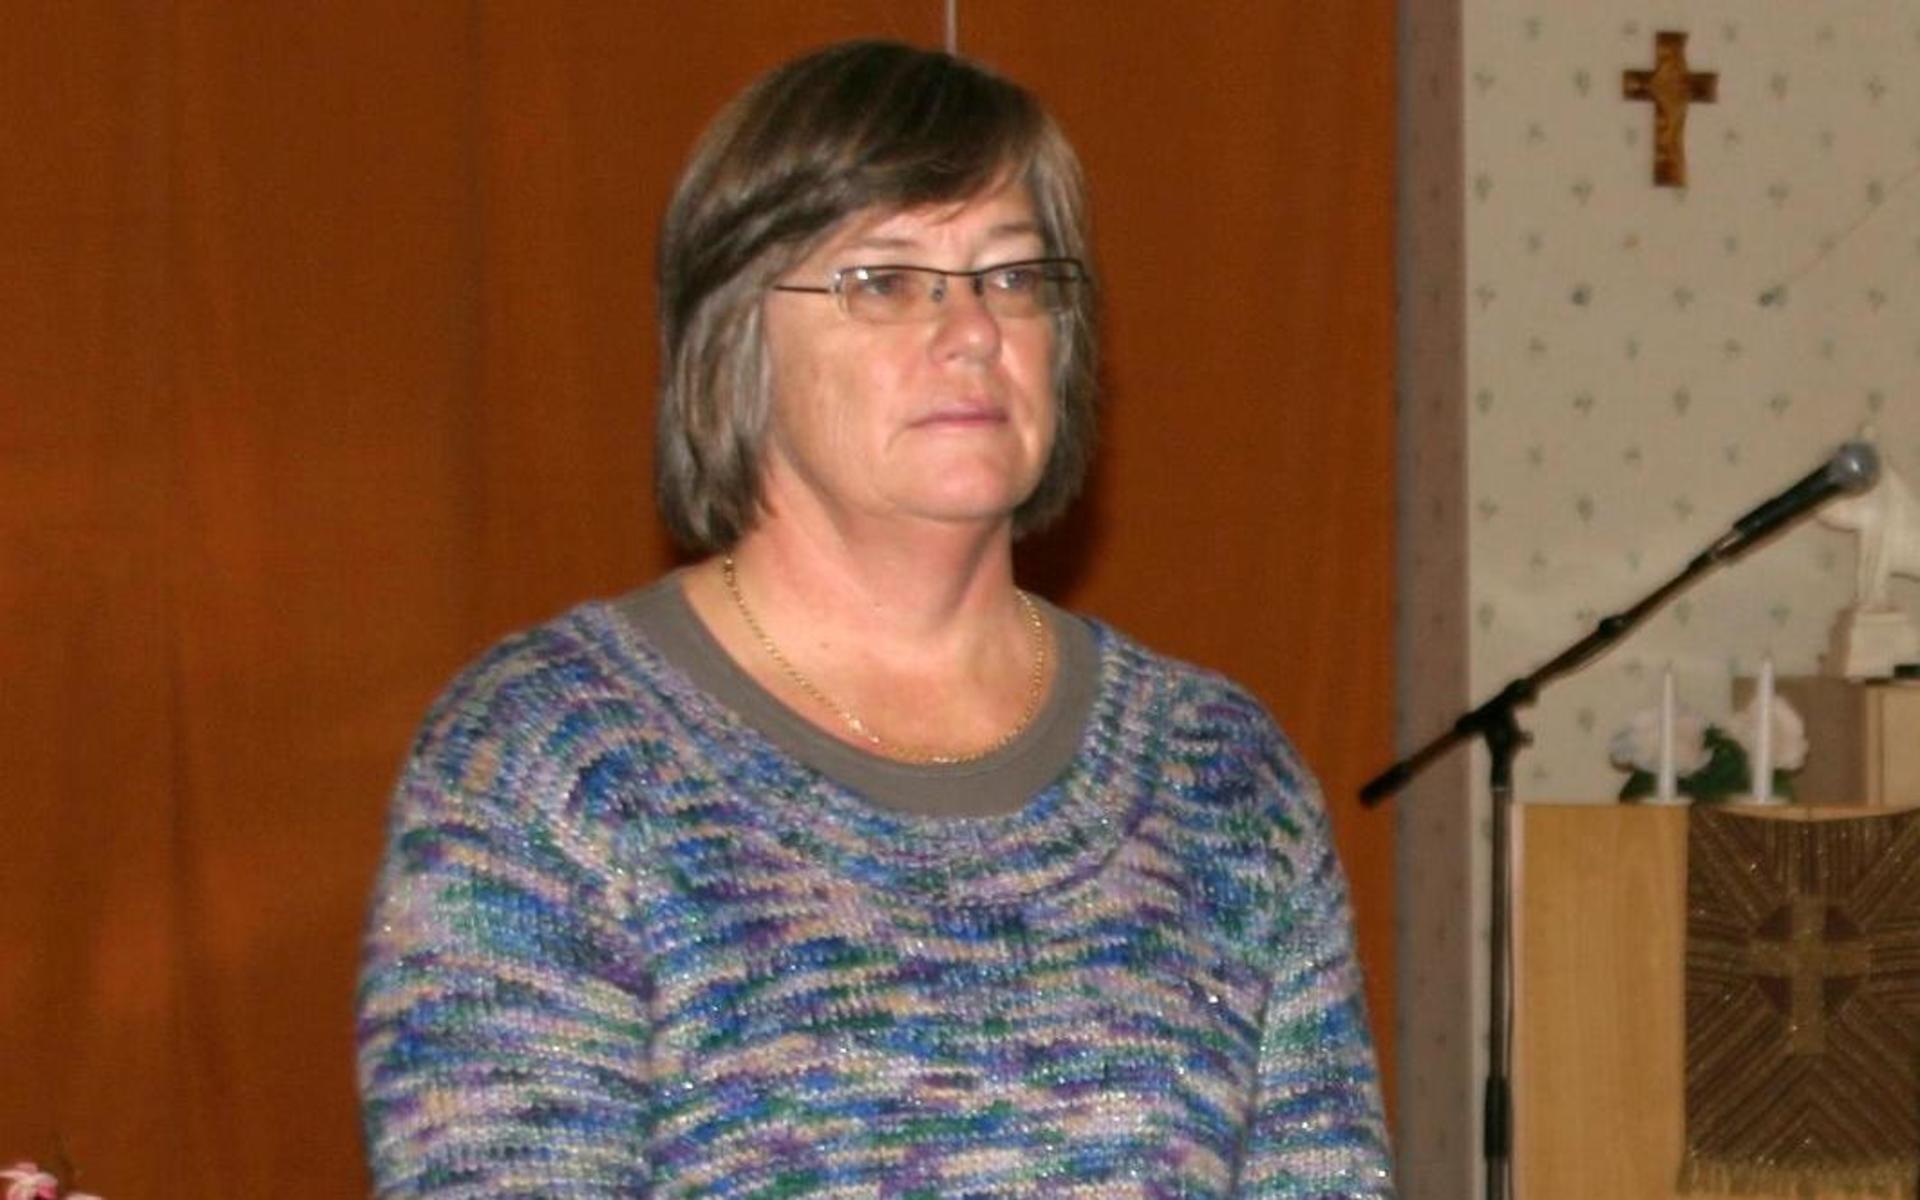 ”Inte på något särskilt boende i Laholms kommun har vi nu någon brukare eller boende som är sjuk i covid”, konstaterar Cecilia Harley, medicinskt ansvarig sjuksköterska på kommunen.